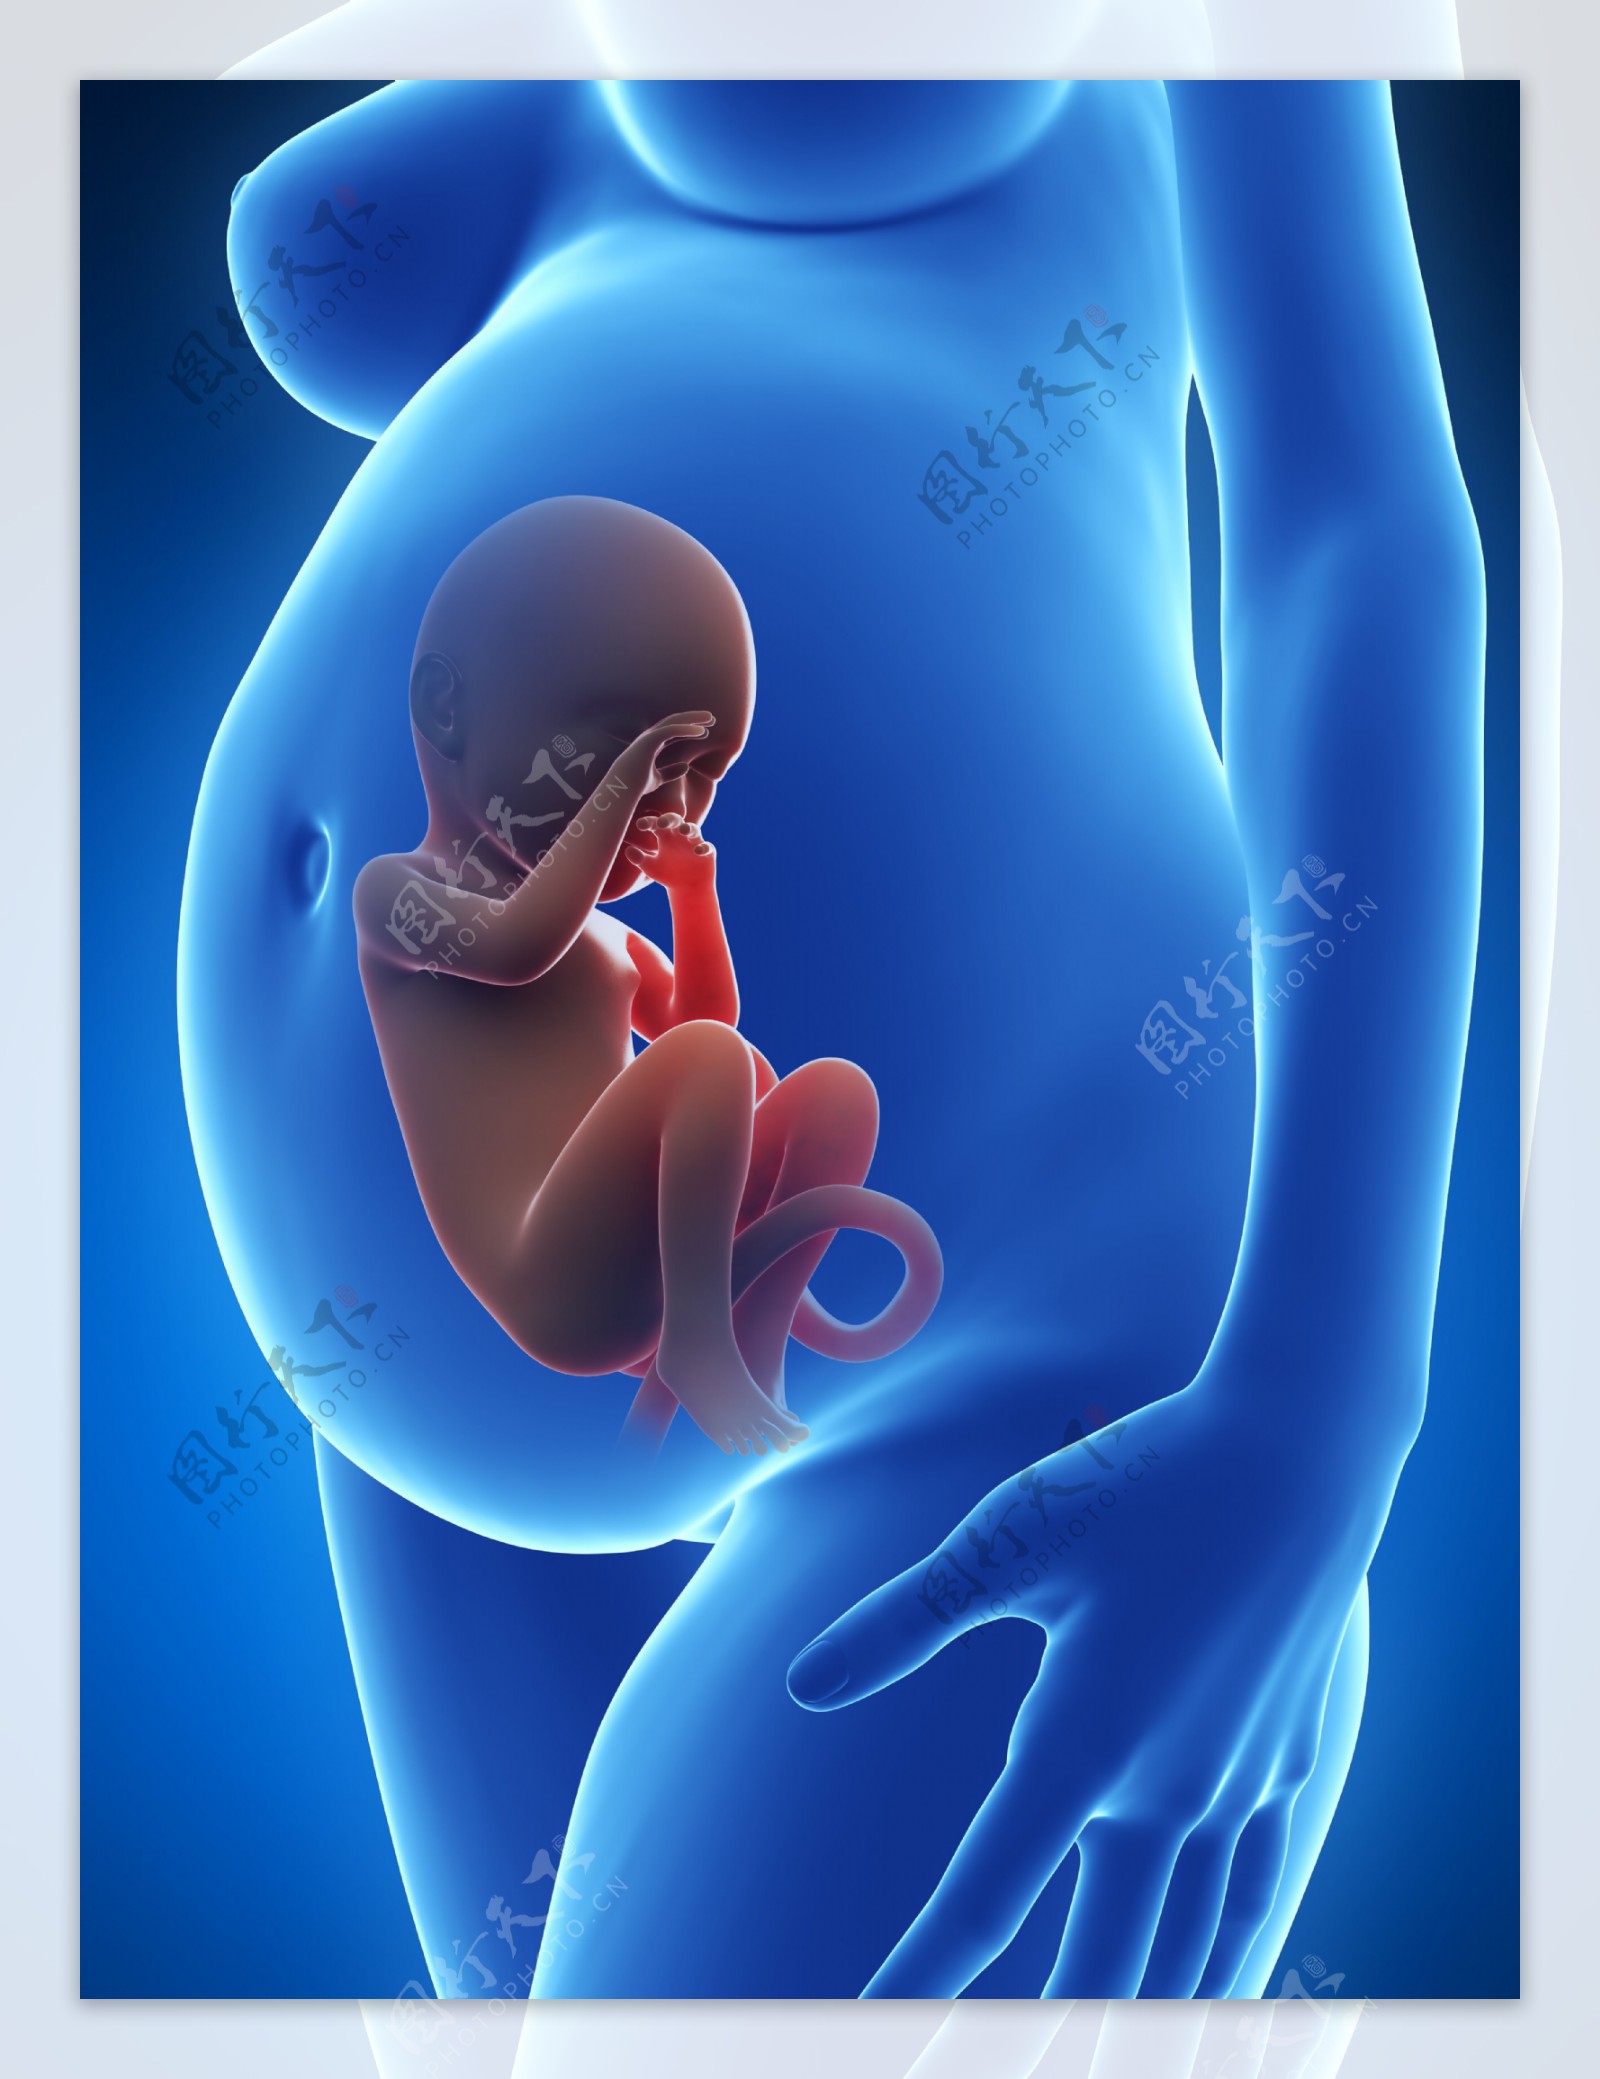 孕周胎儿发育对照图-图库-五毛网